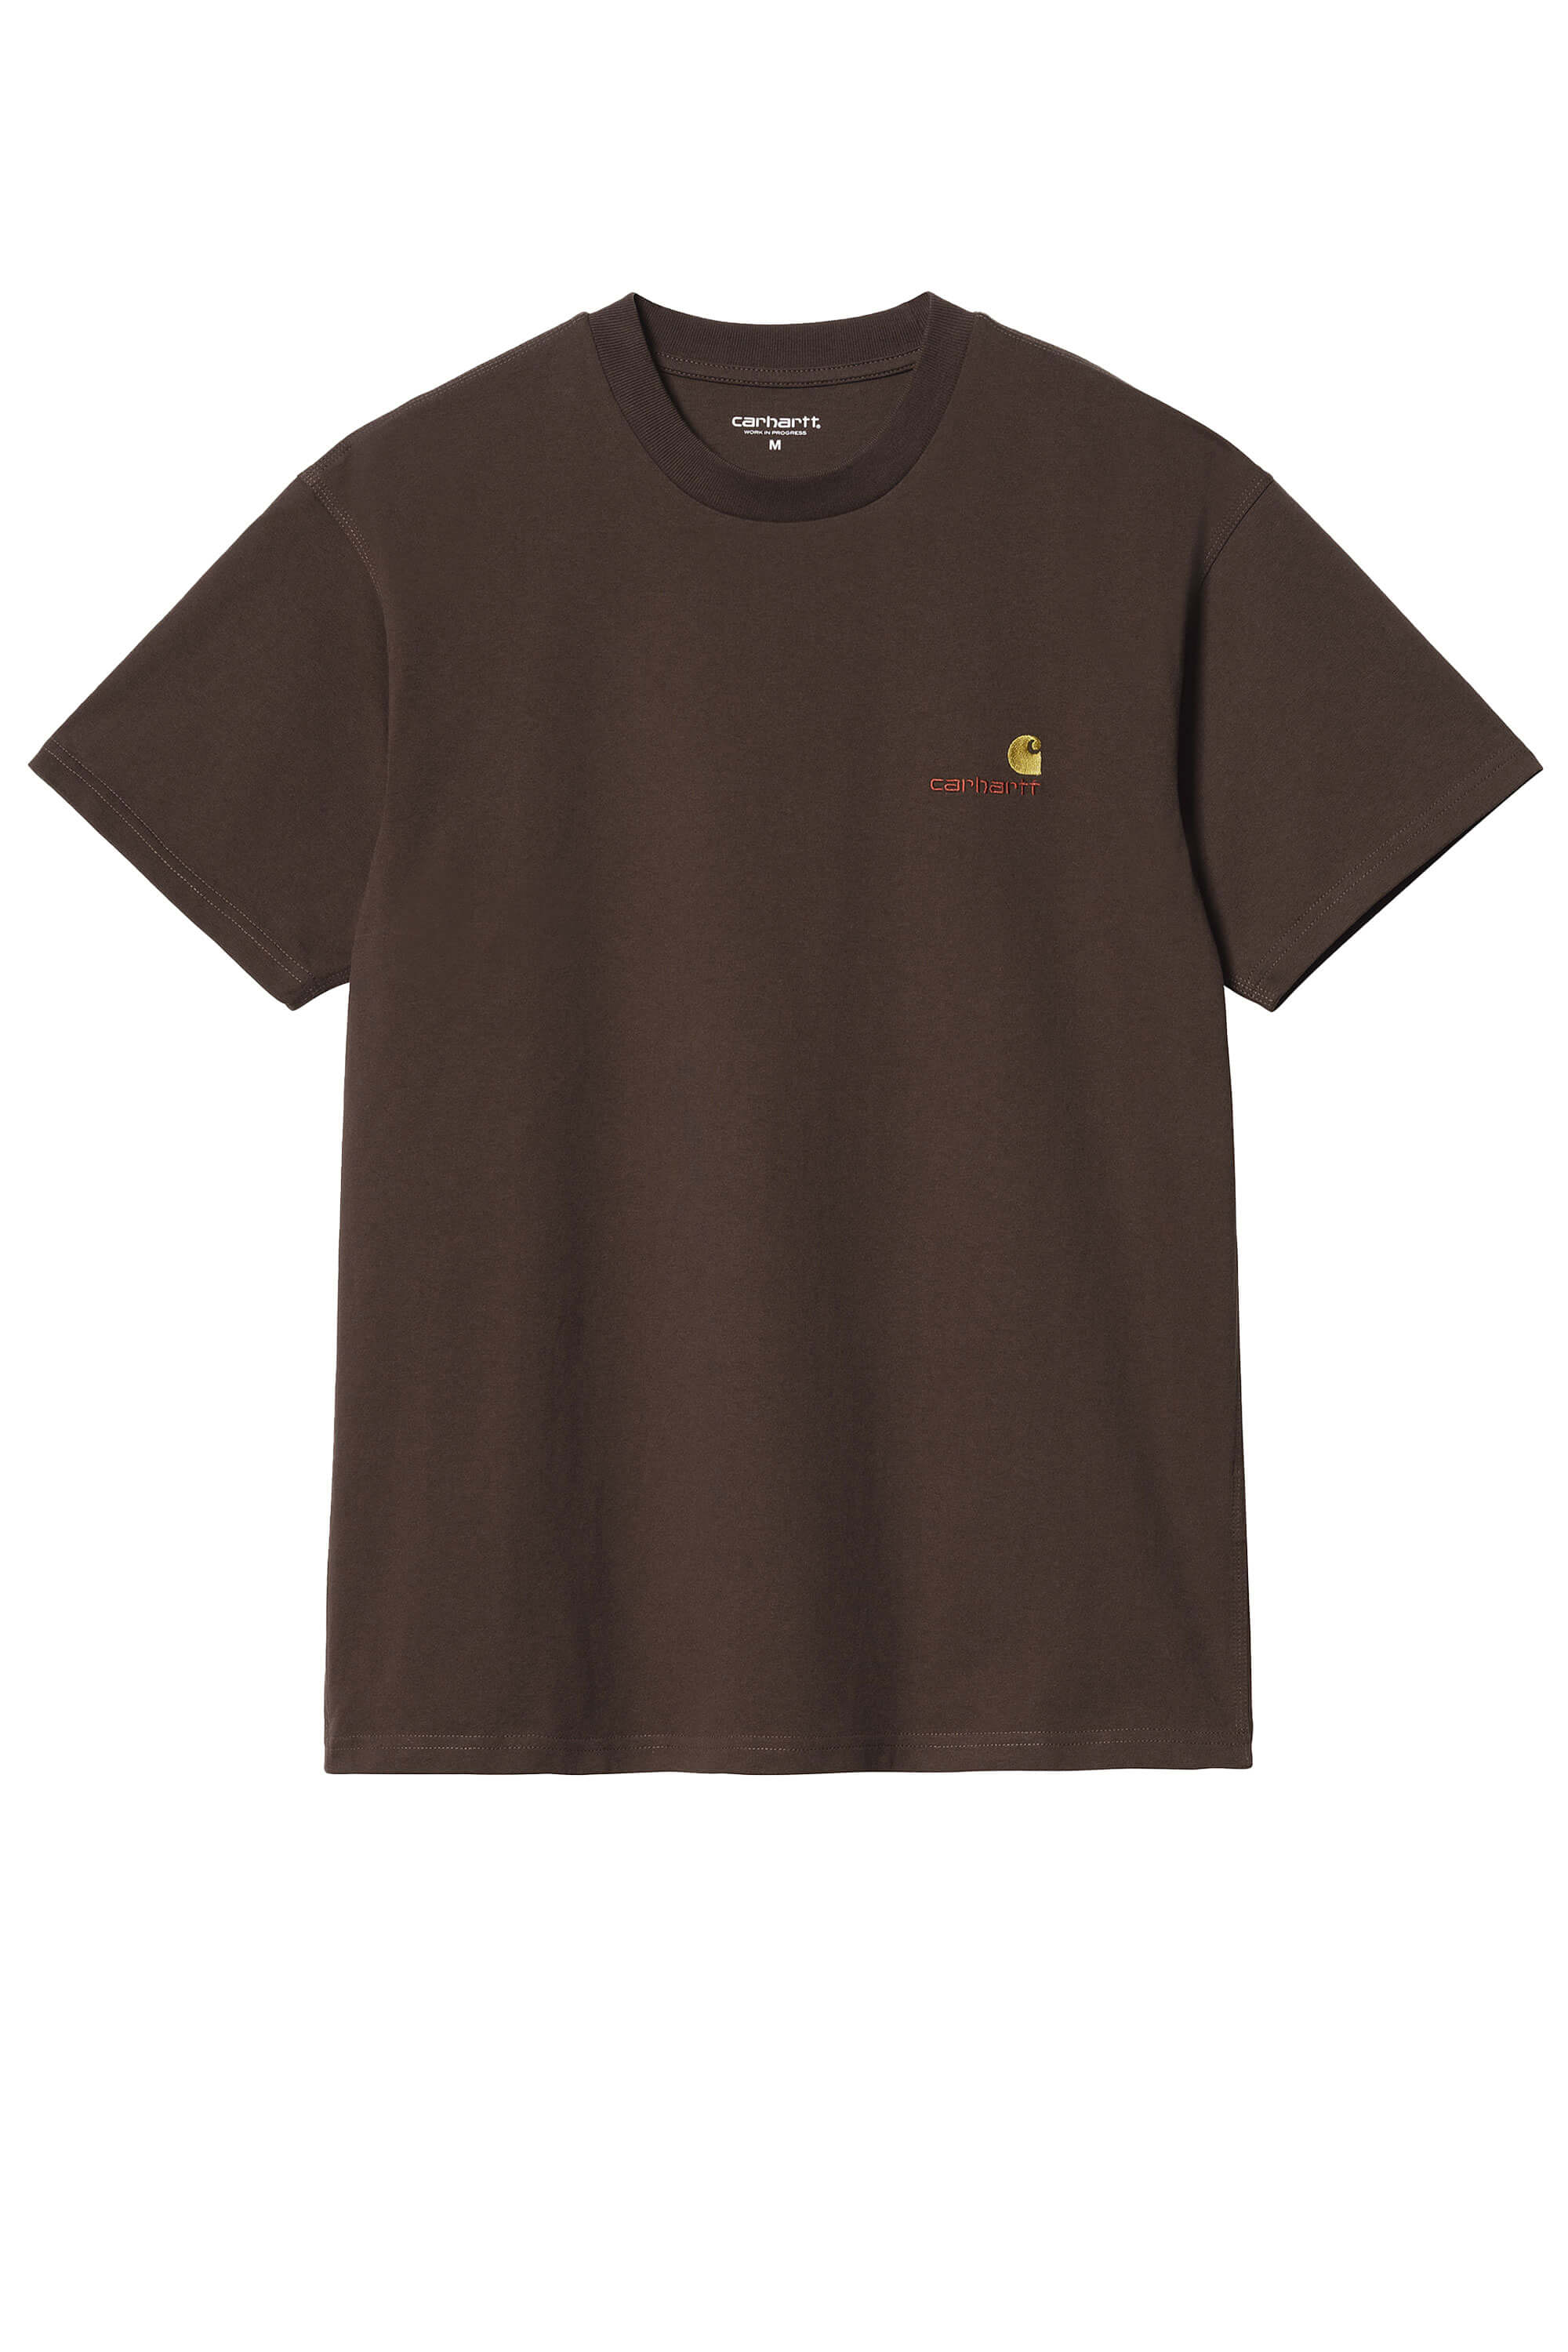 T-shirt ricamata in cotone marrone scuro